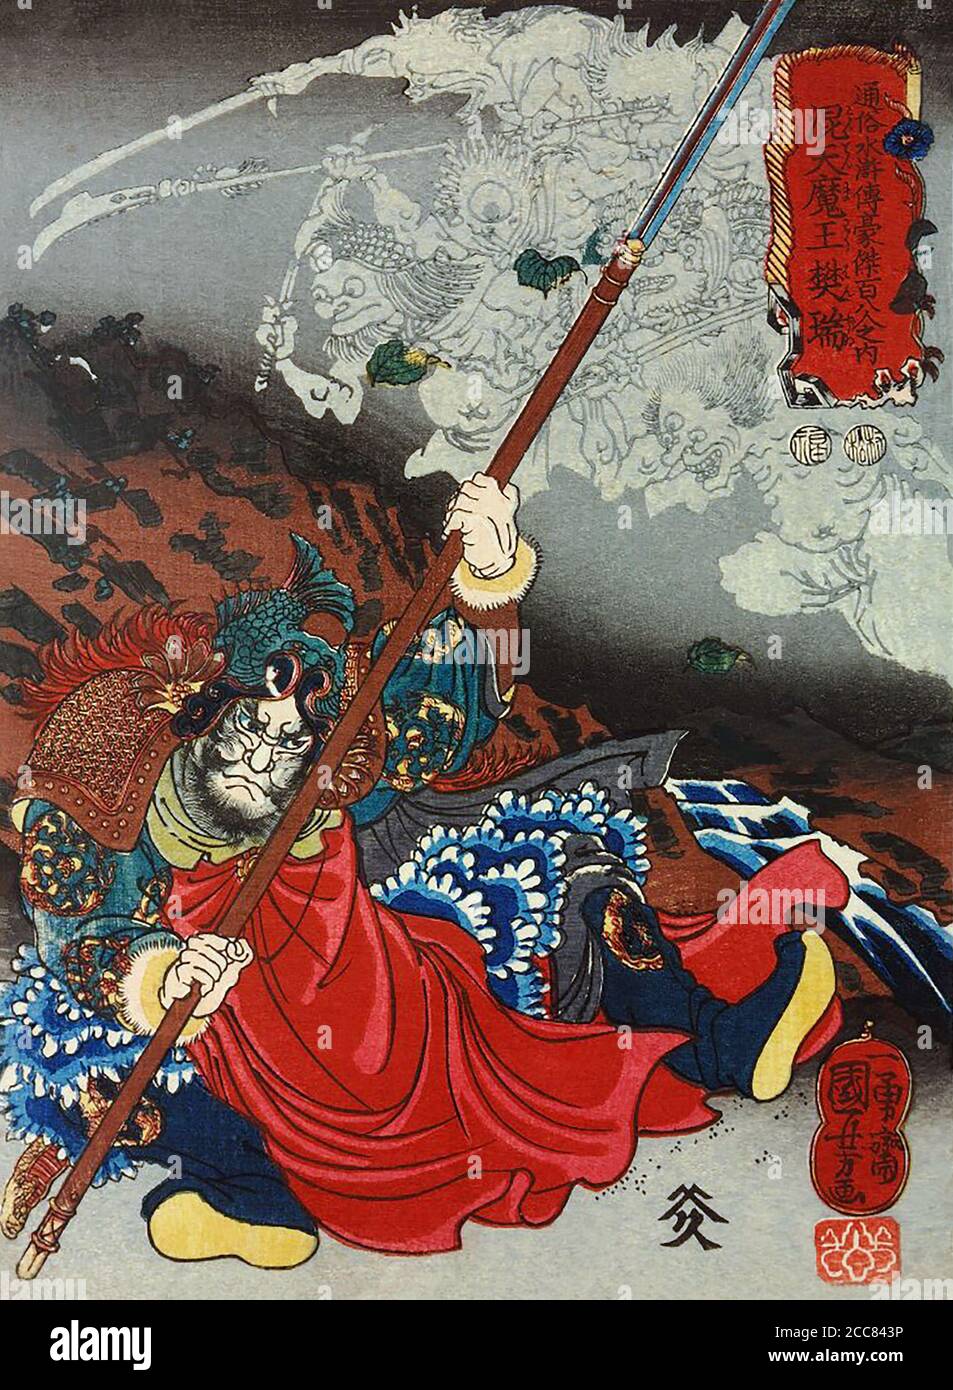 Giappone: Konsei Mao o Kotenmao Hazui, uno dei 'centootto Eroi del margine d'acqua', afferrando la lancia, cade indietro prima di un'apparizione di demoni. Stampa di blocchi di legno di Utagawa Kuniyoshi (1797-1863), 1827-1830. Il margine d'acqua (conosciuto in cinese come Shuihu Zhuan, talvolta abbreviato in Shuihu, conosciuto come Suikoden in giapponese, così come gli fuorilegge della Marsh, vale delle Marais, tutti gli uomini sono fratelli, uomini delle Marais, O le paludi del Monte Liang in inglese, è un romanzo del XIV secolo e uno dei quattro grandi romanzi classici della letteratura cinese. Attribuito a Shi Nai'an e wri Foto Stock